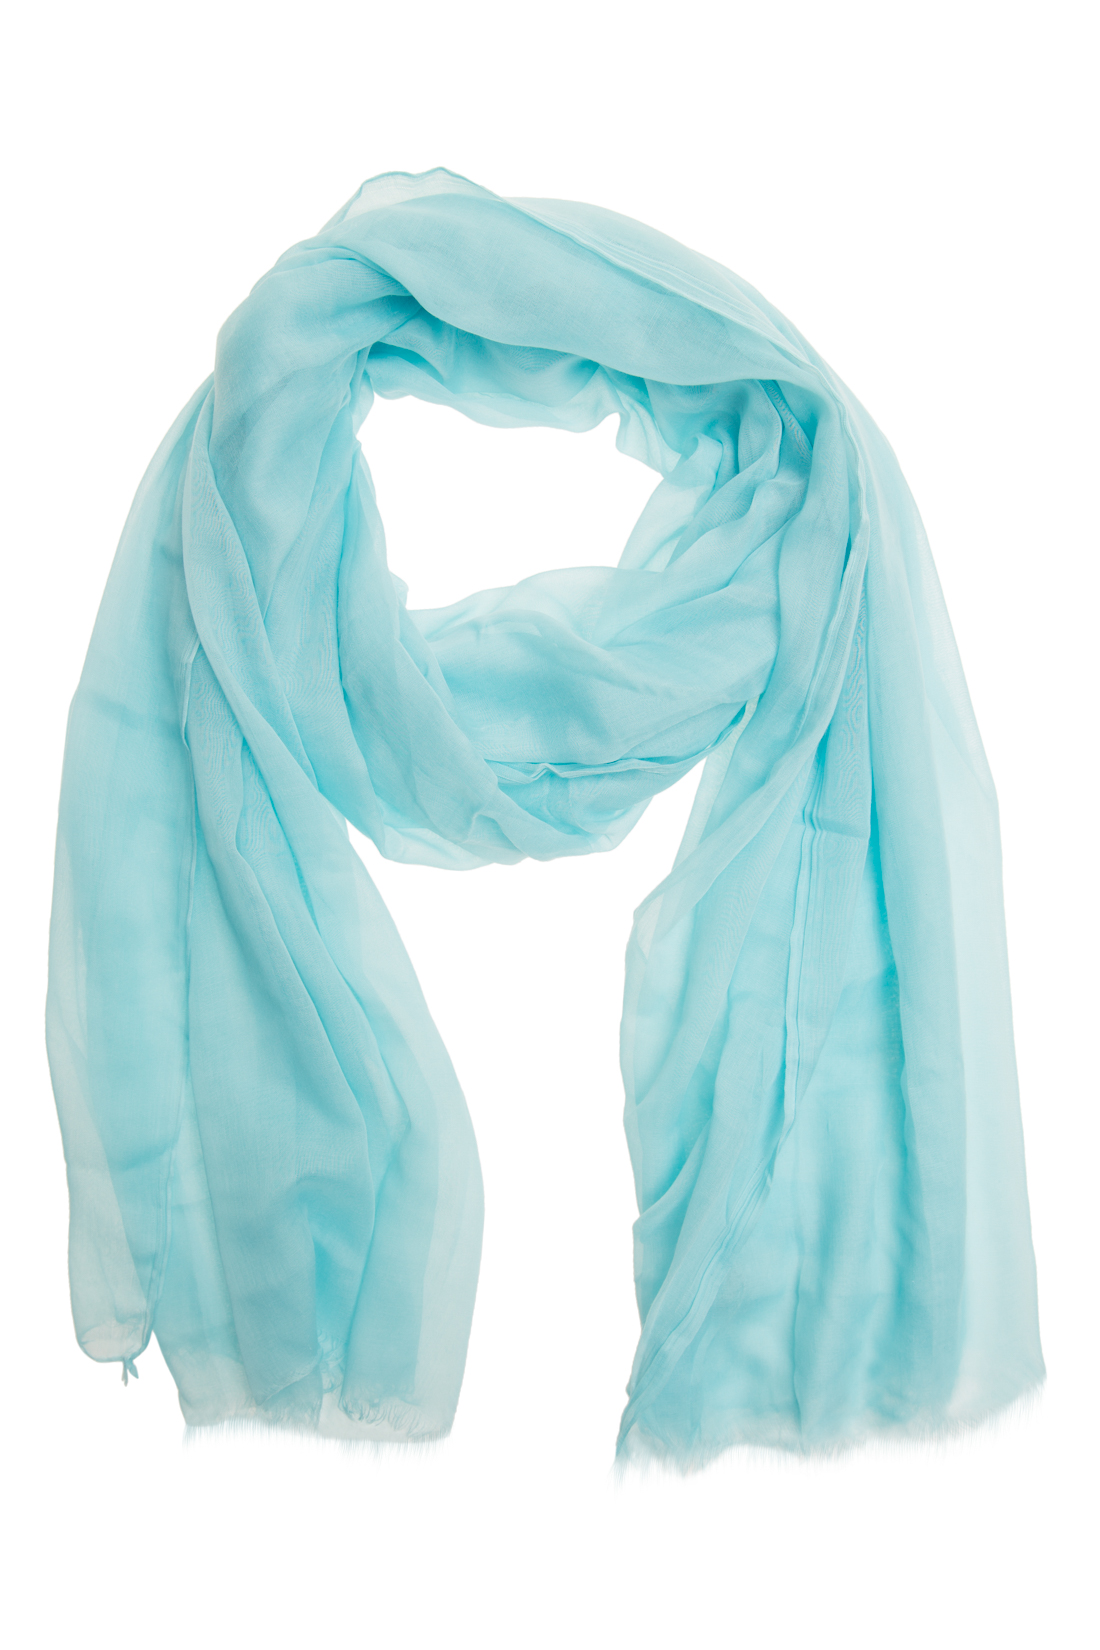 Однотонный шарф-фуляр (арт. baon B357029), размер Без/раз, цвет голубой Однотонный шарф-фуляр (арт. baon B357029) - фото 1